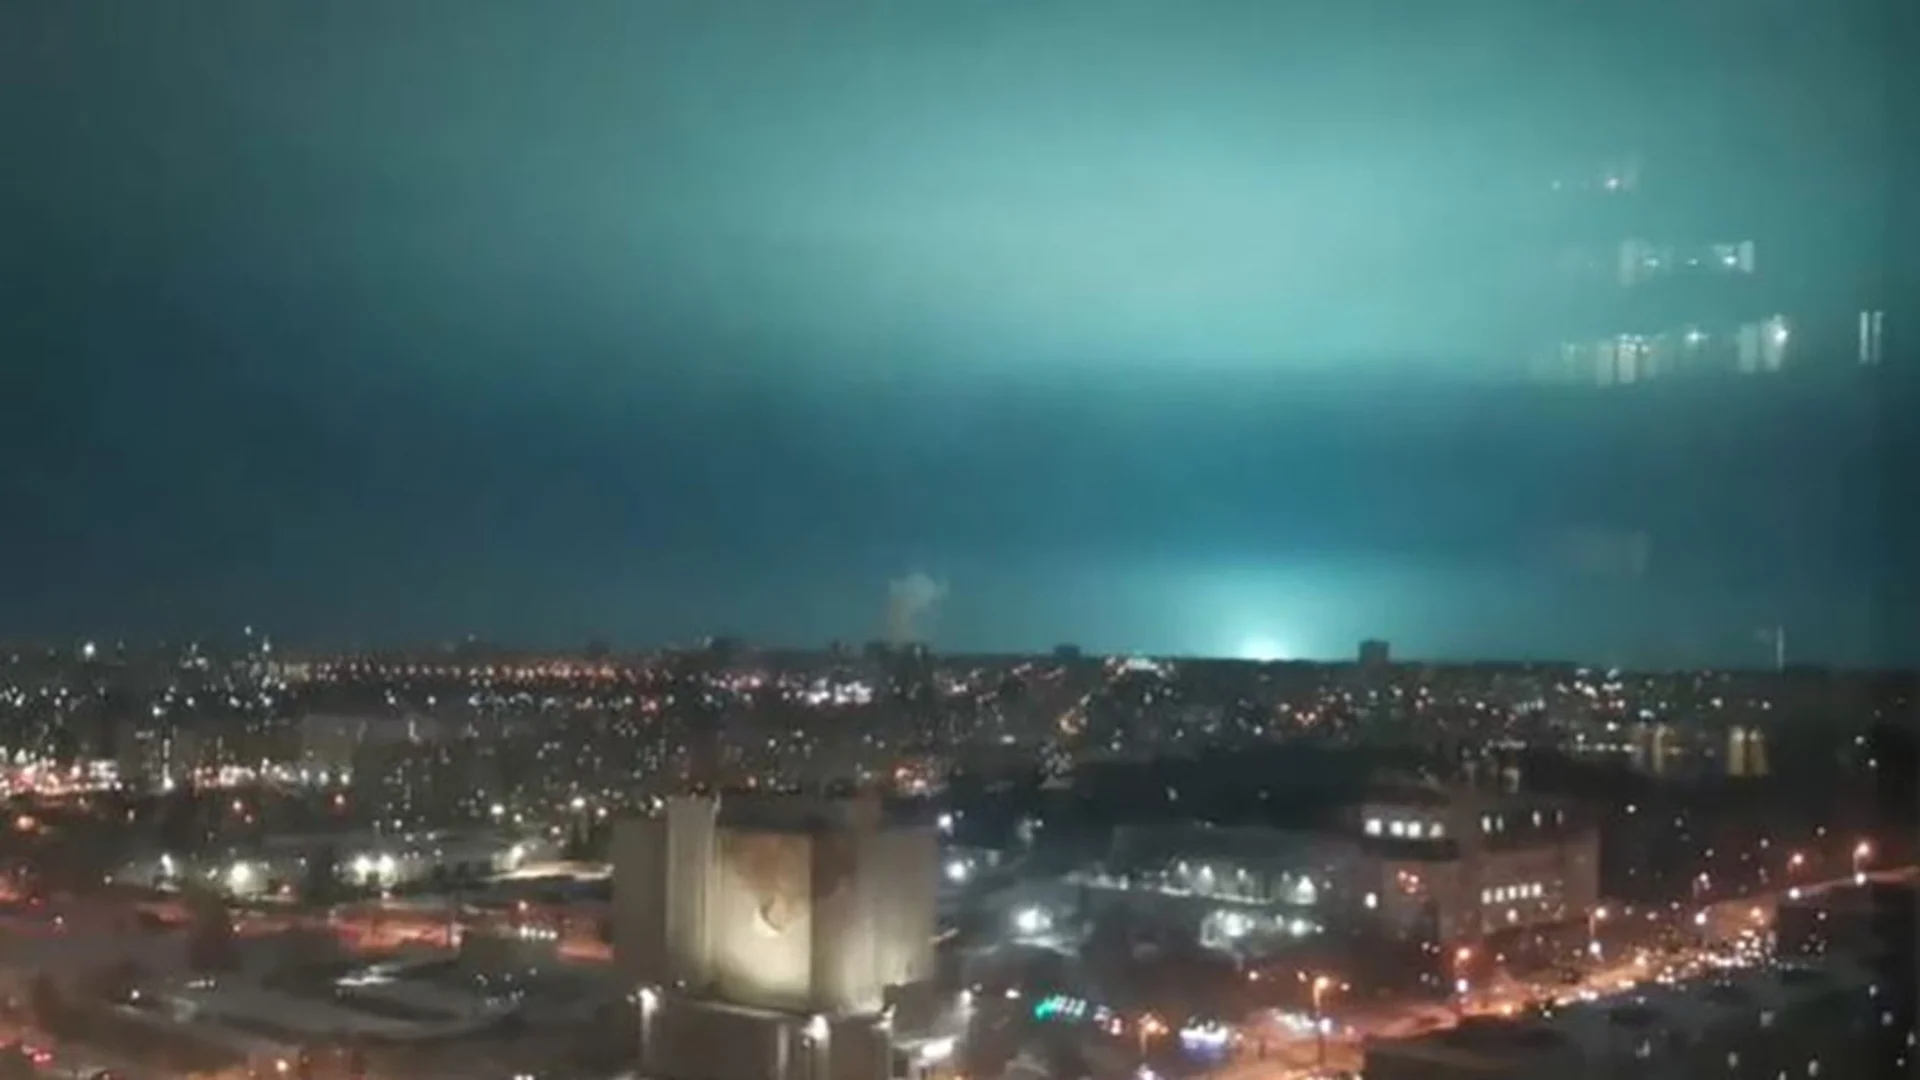 В Челябинск се уплашиха от странни проблясъци в небето, електричеството също изчезна (ВИДЕА)